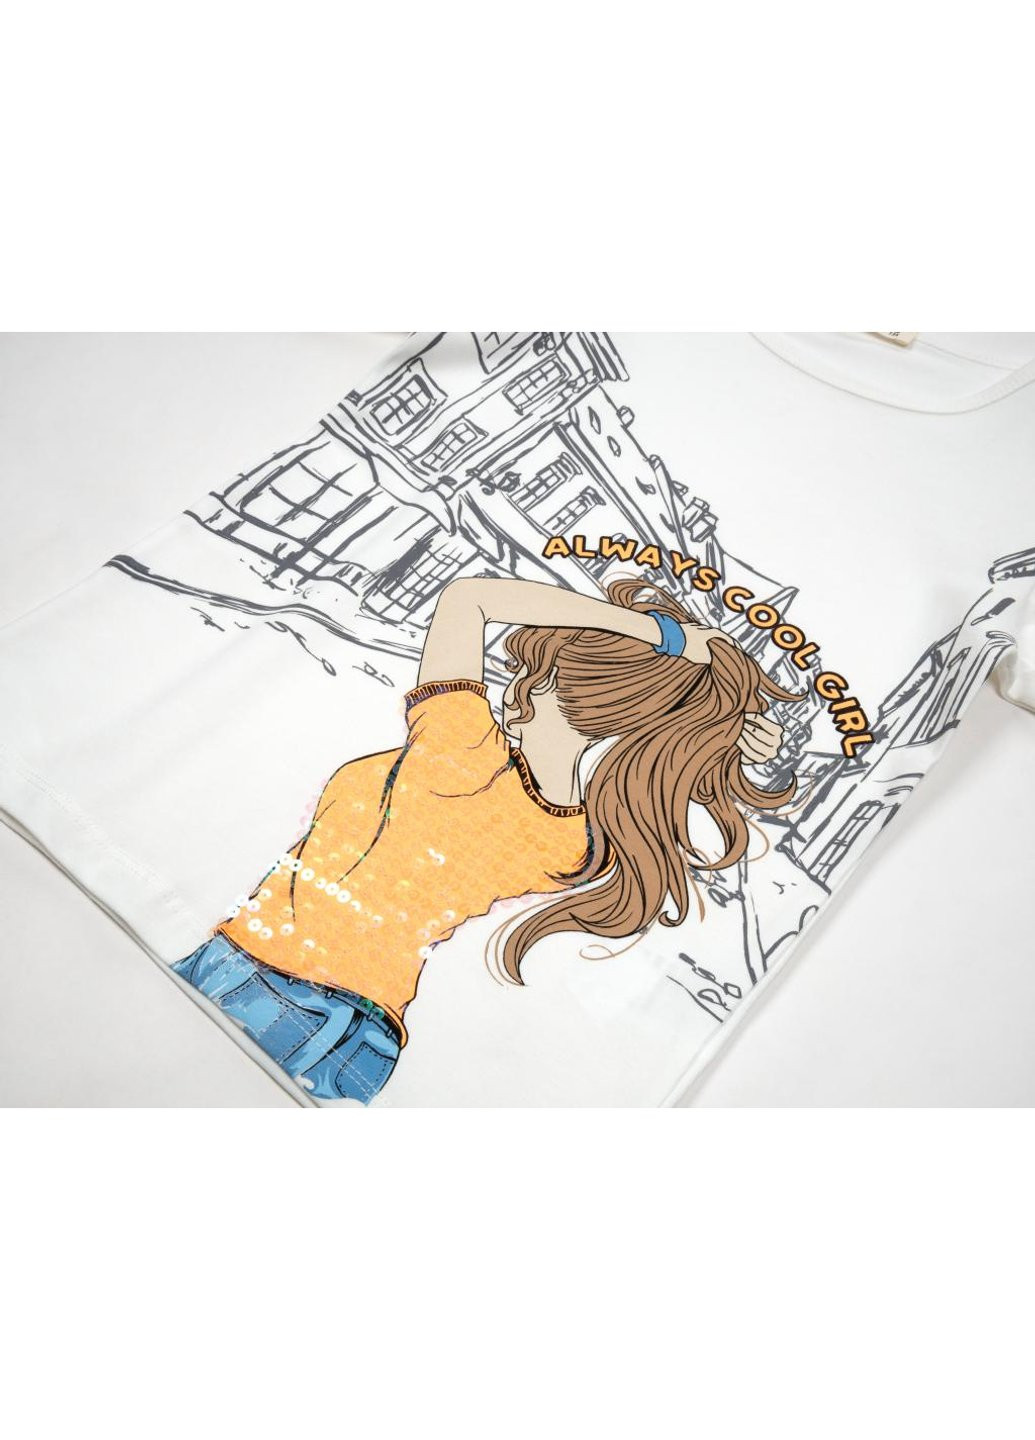 Комбинированная футболка детская с девочкой (15770-140g-cream) Breeze